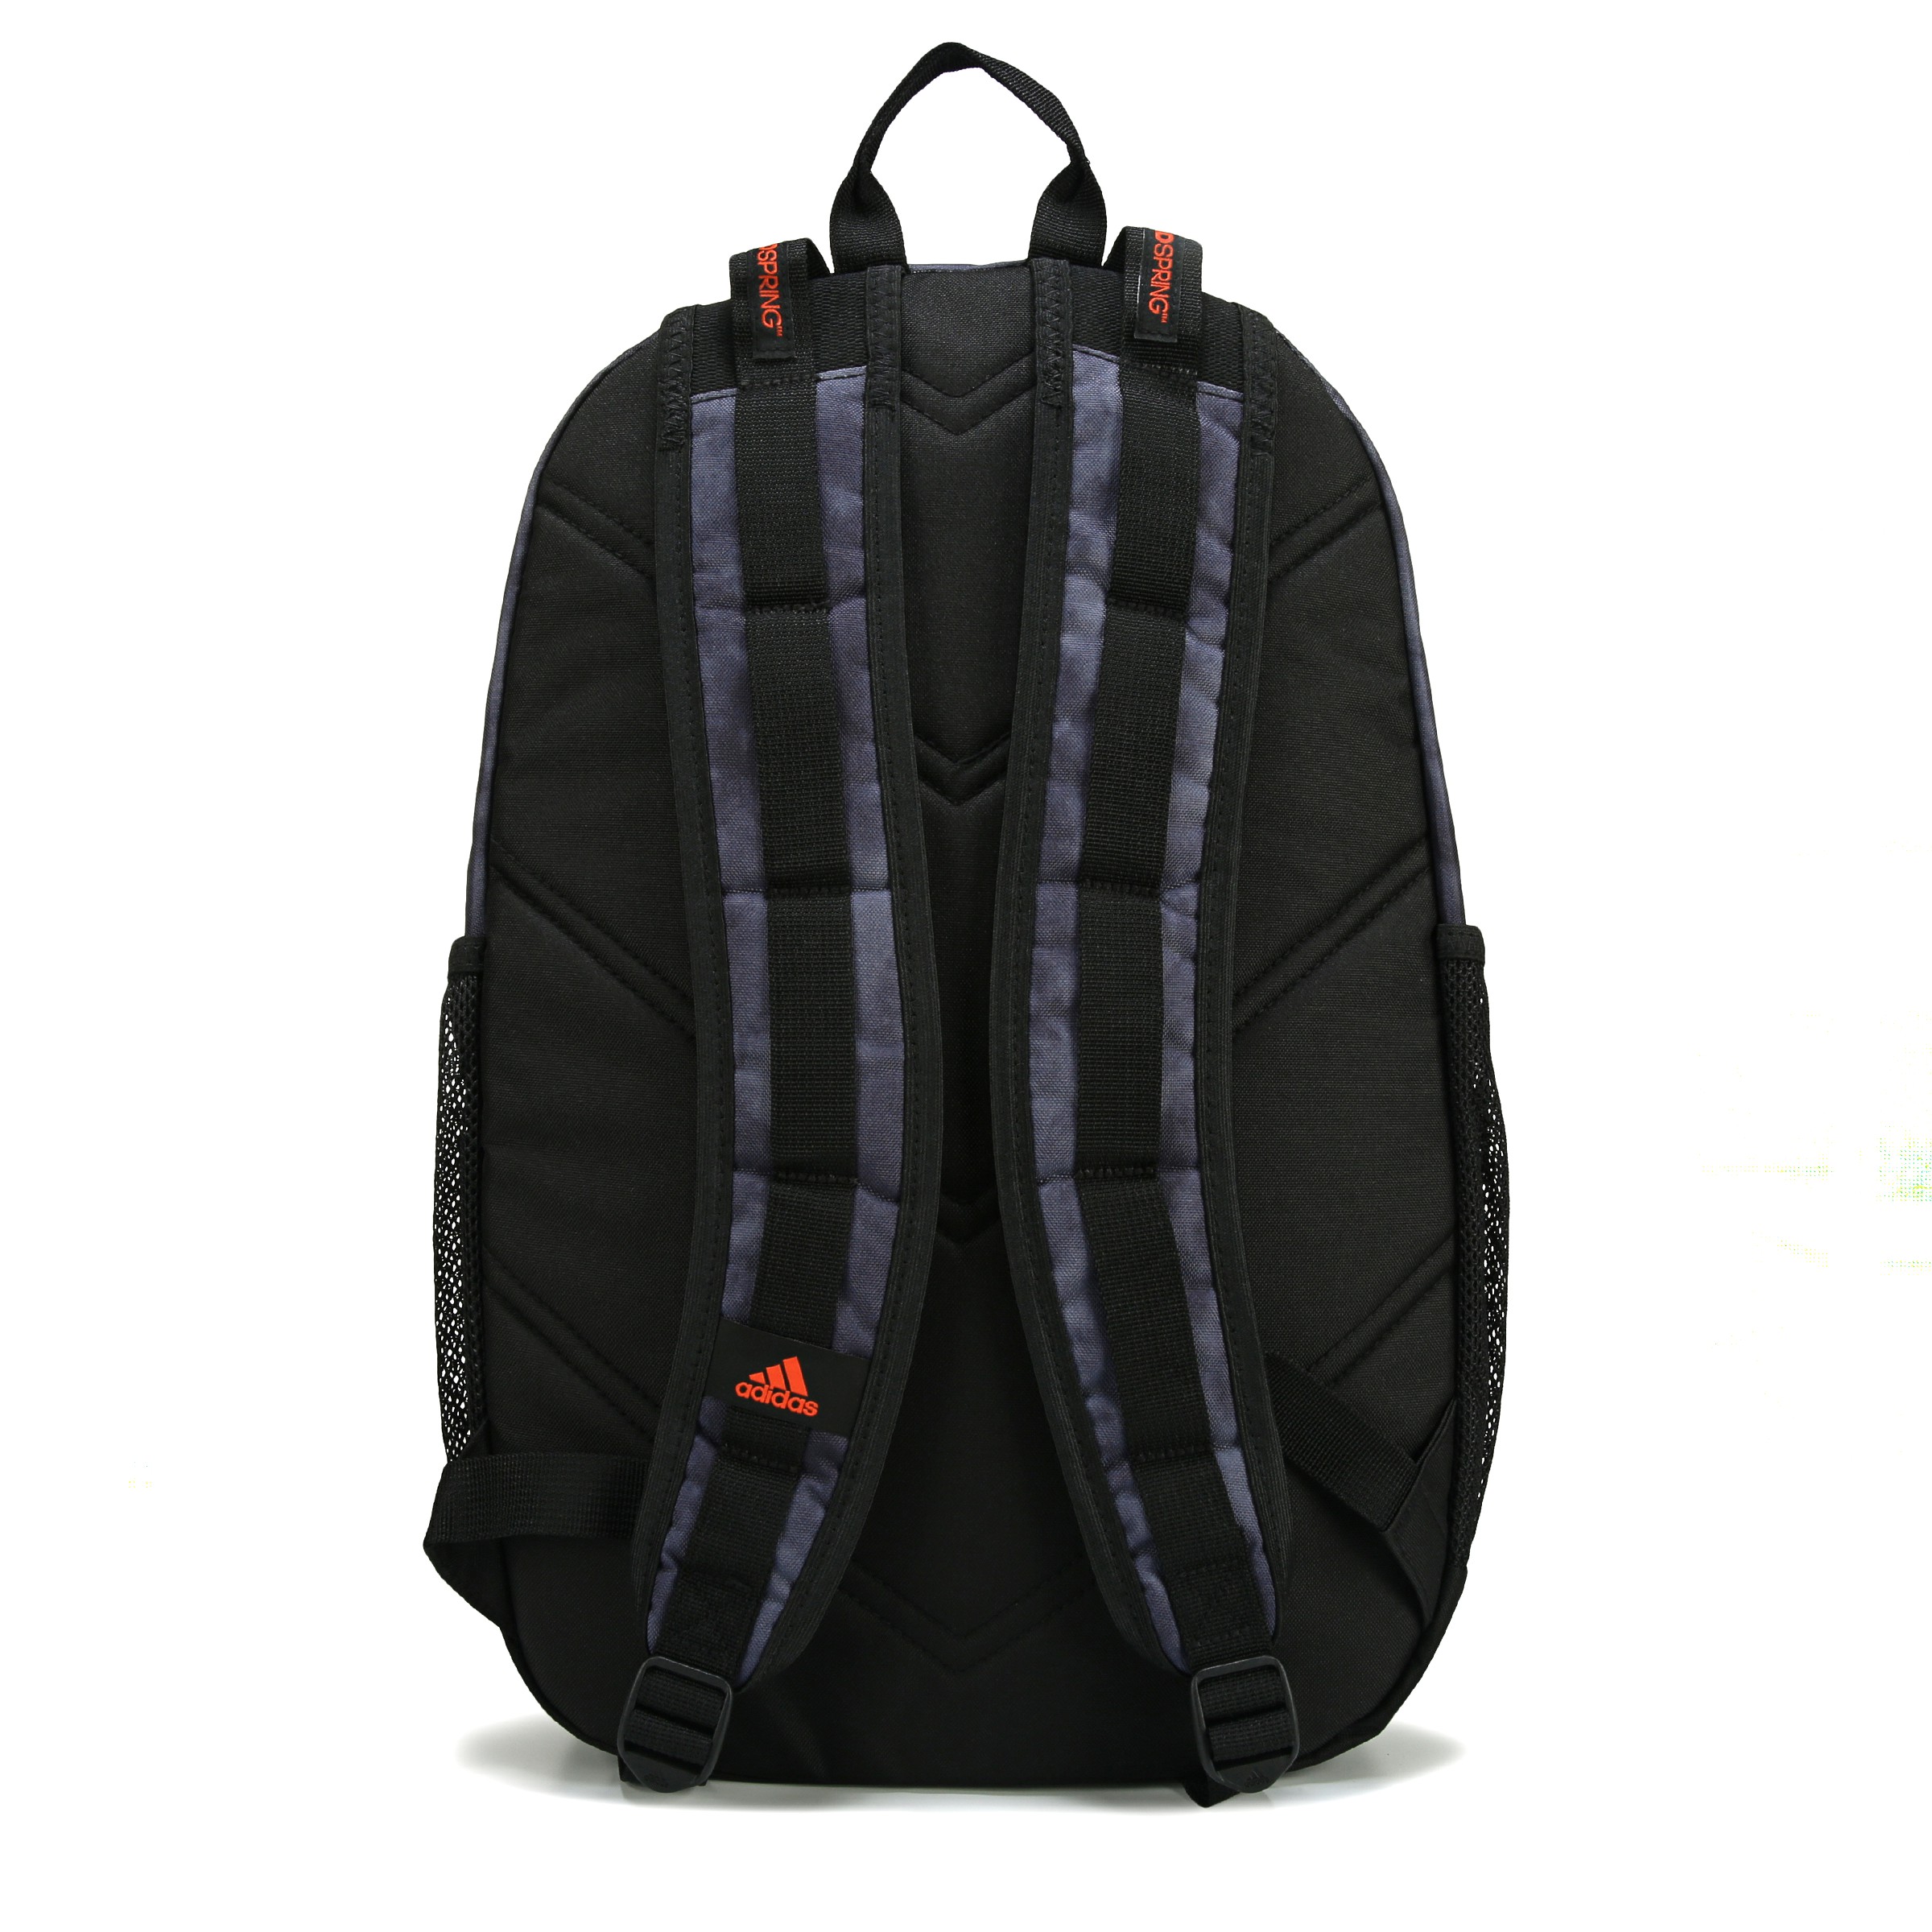 Excel 6 Laptop Backpack